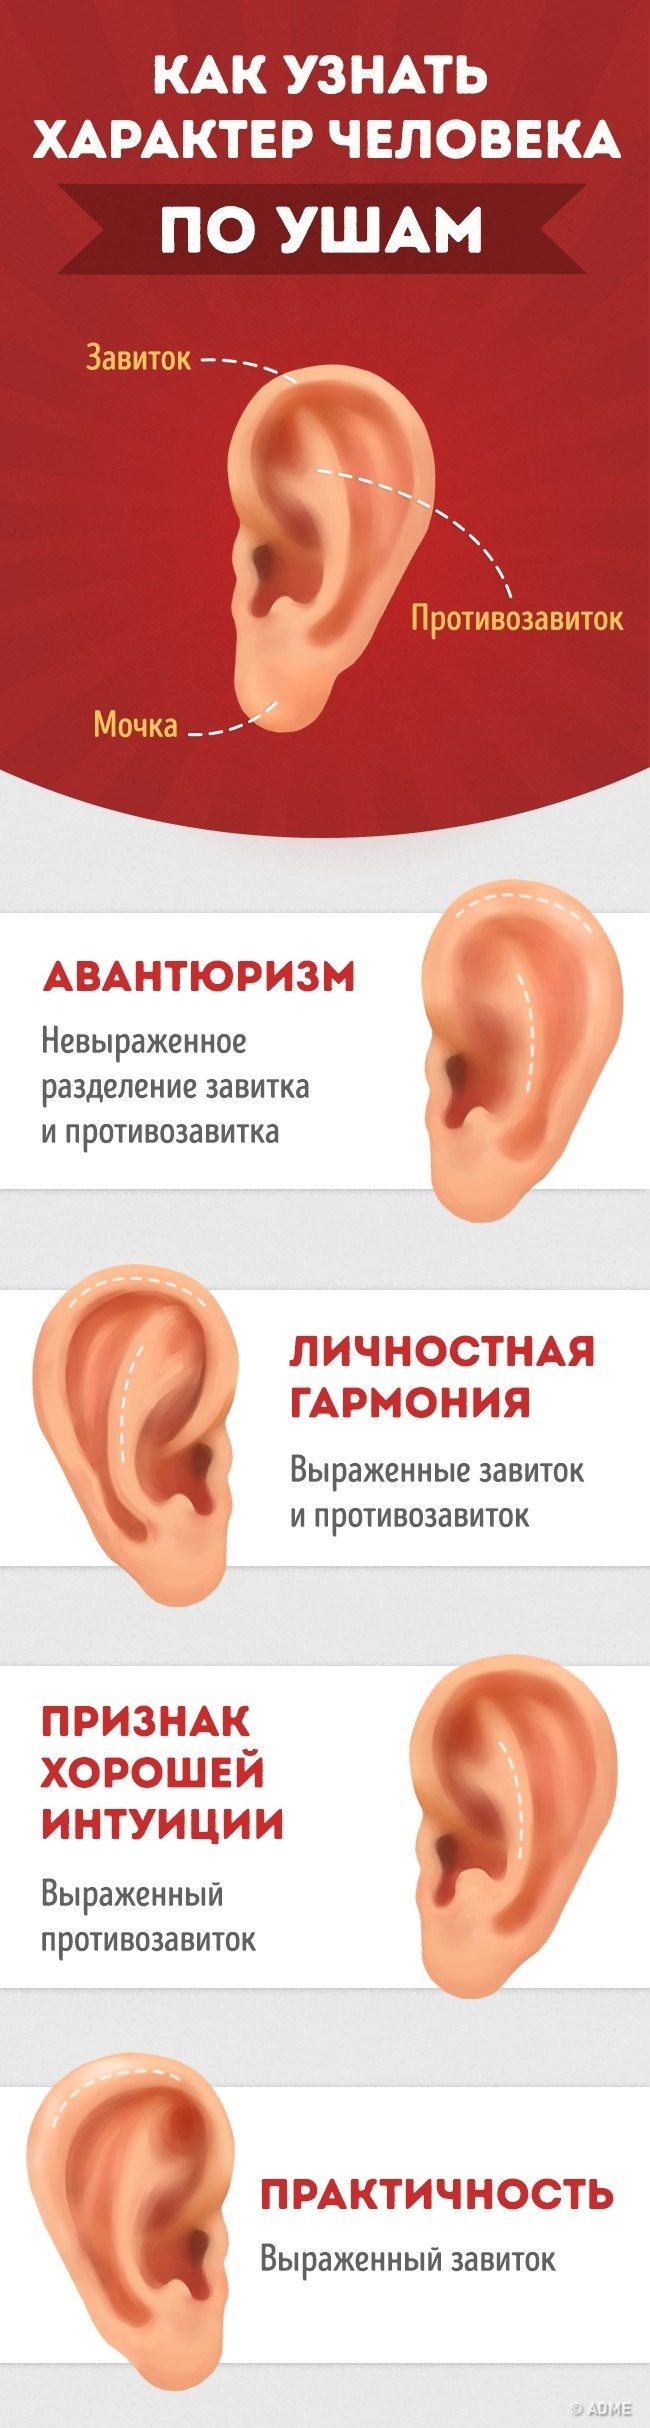 Как определить характер человека по ушам